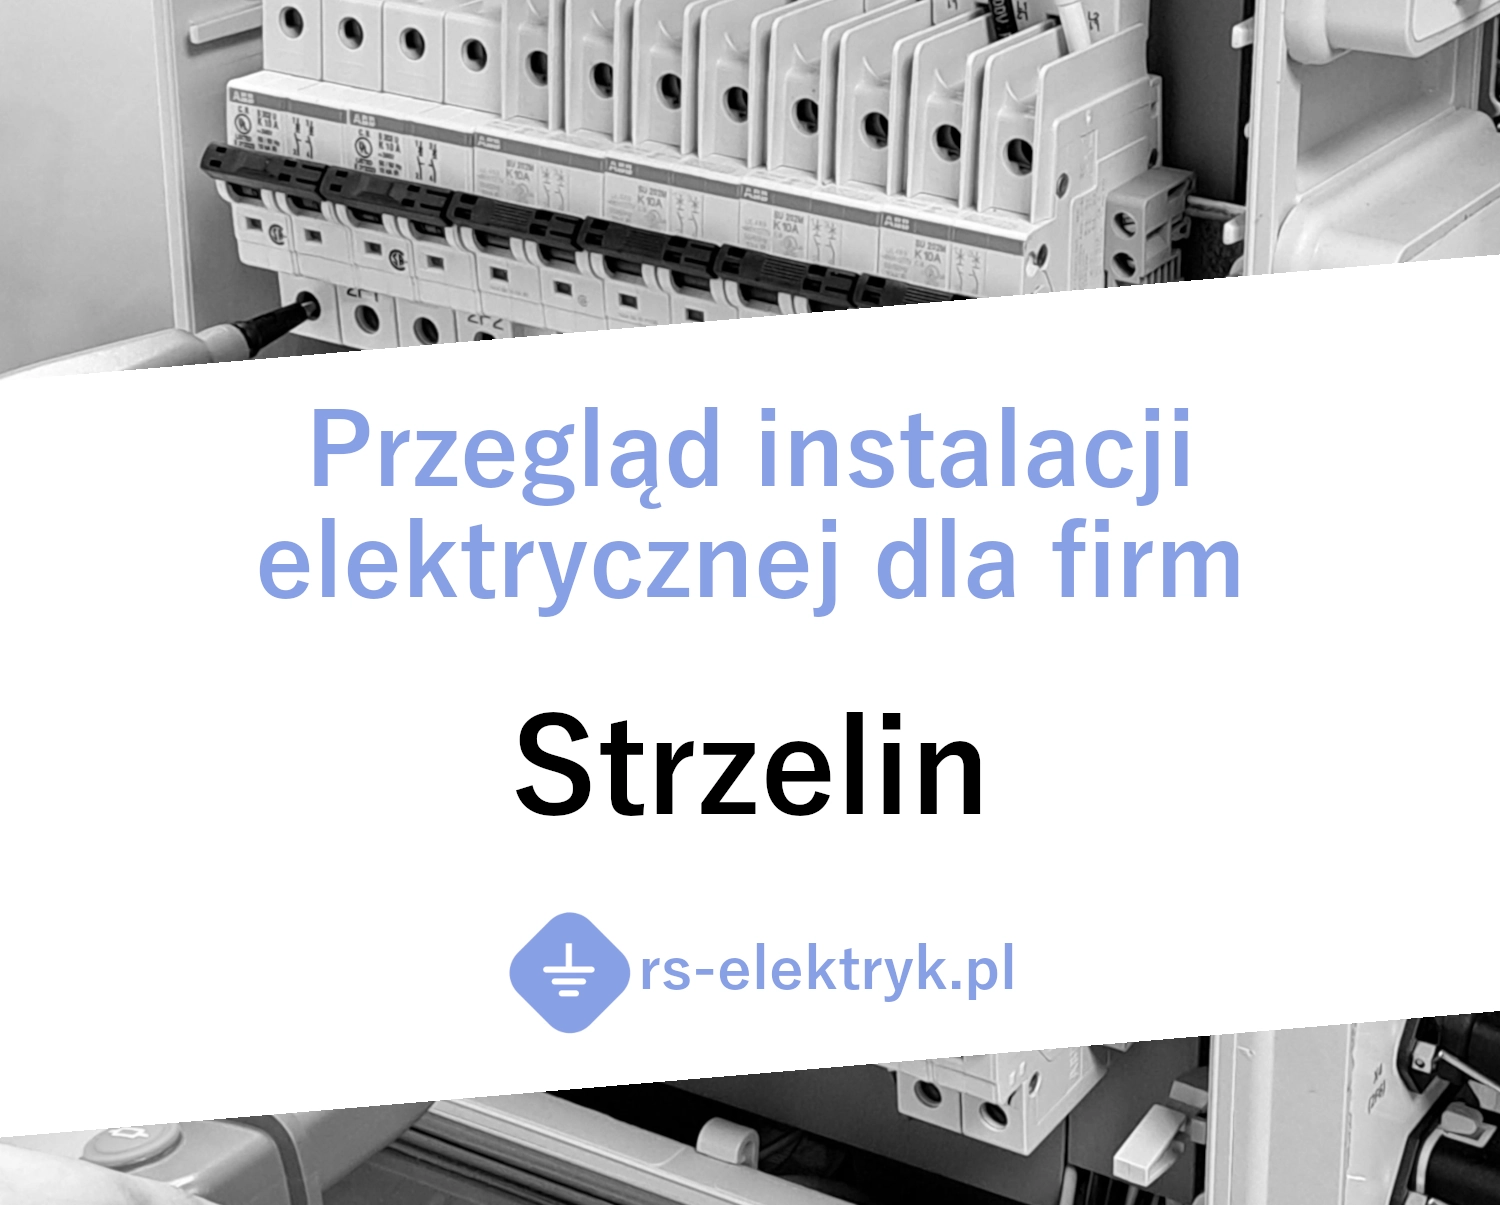 Przegląd instalacji elektrycznej dla firm (Strzelin)